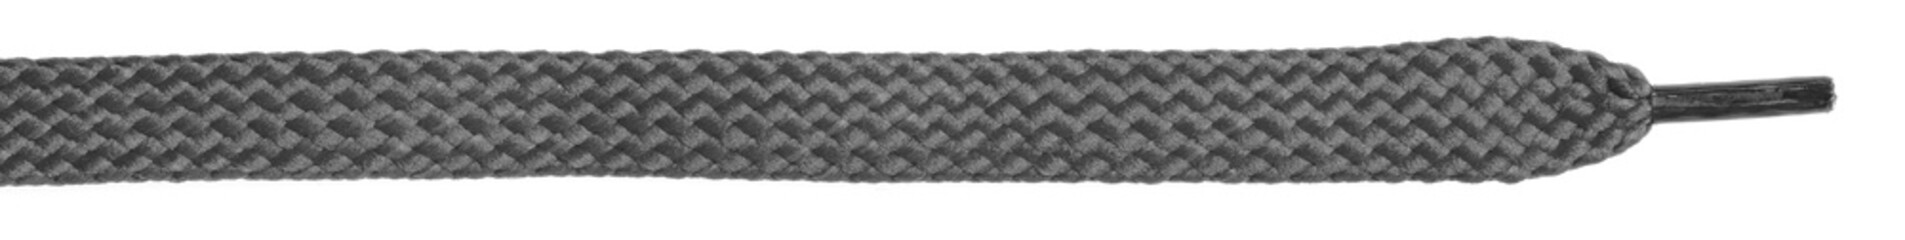 Dark fabric shoelaces isolated on white background. close-up